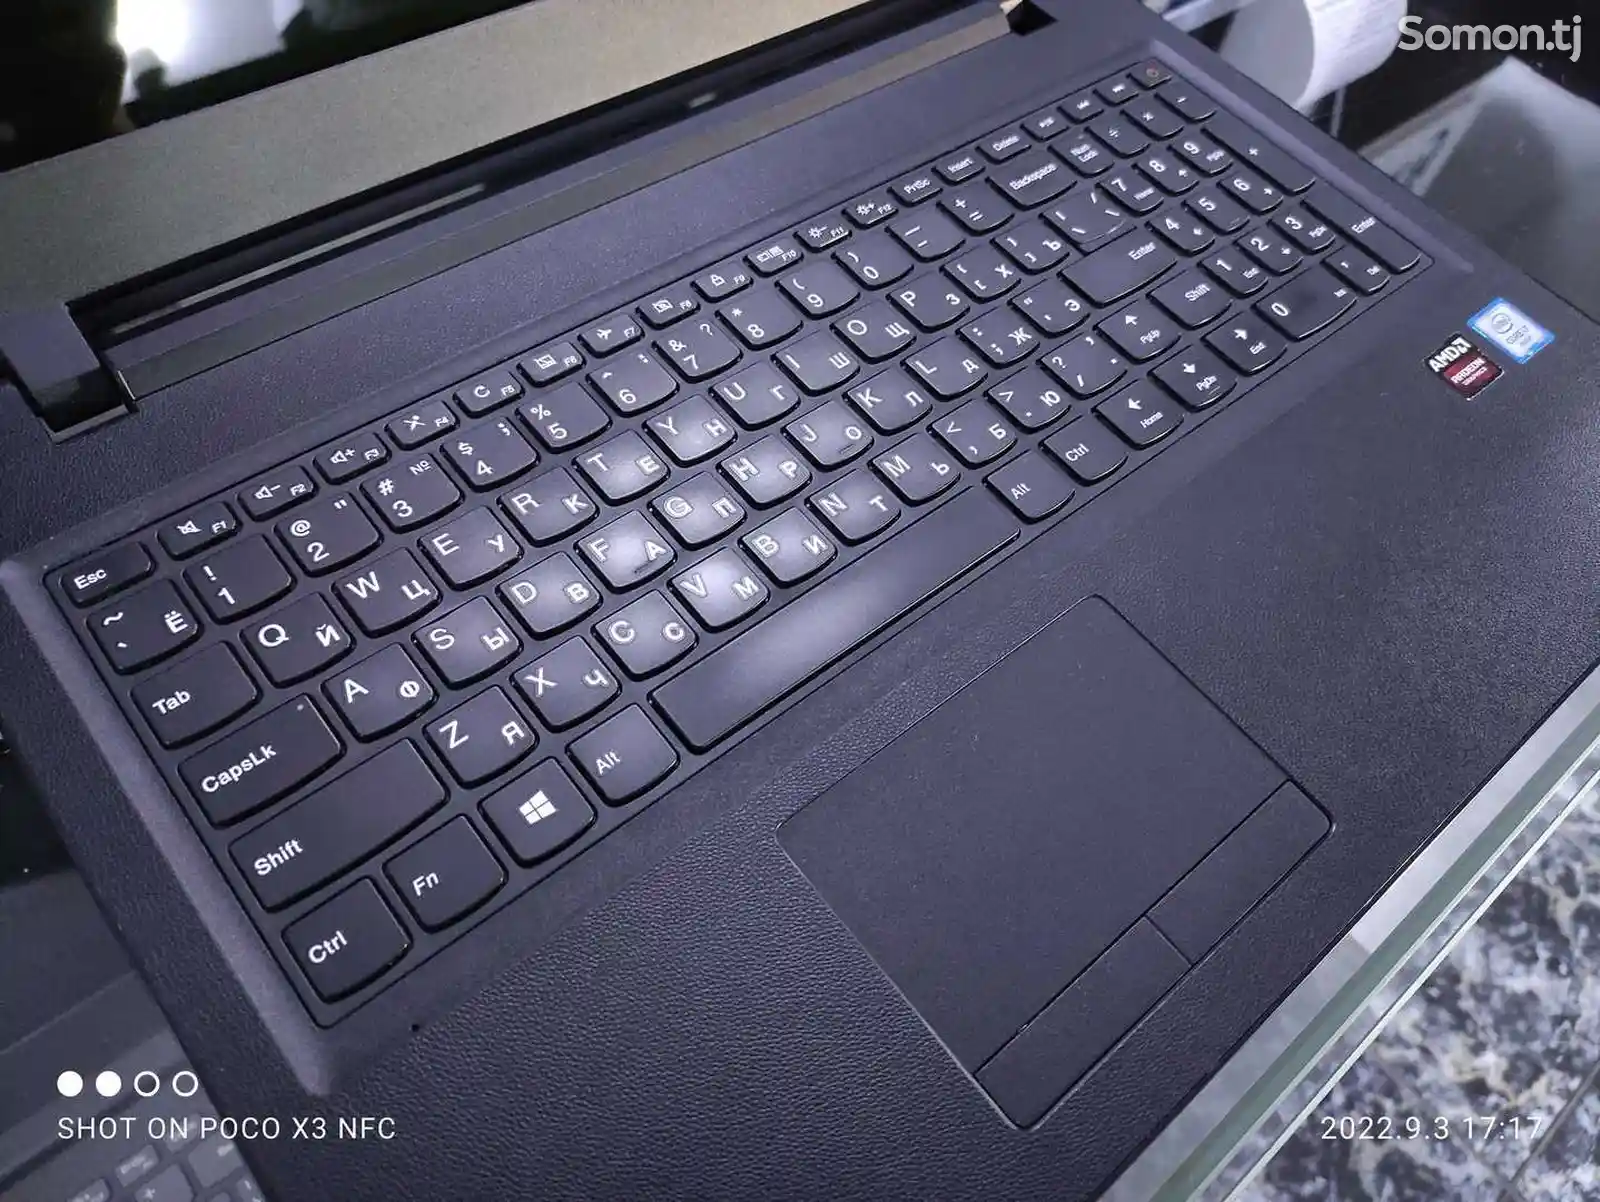 Игровой Ноутбук Lenovo Ideapad 110 Core i7-6498DU 8GB/1TB 6TH GEN-5